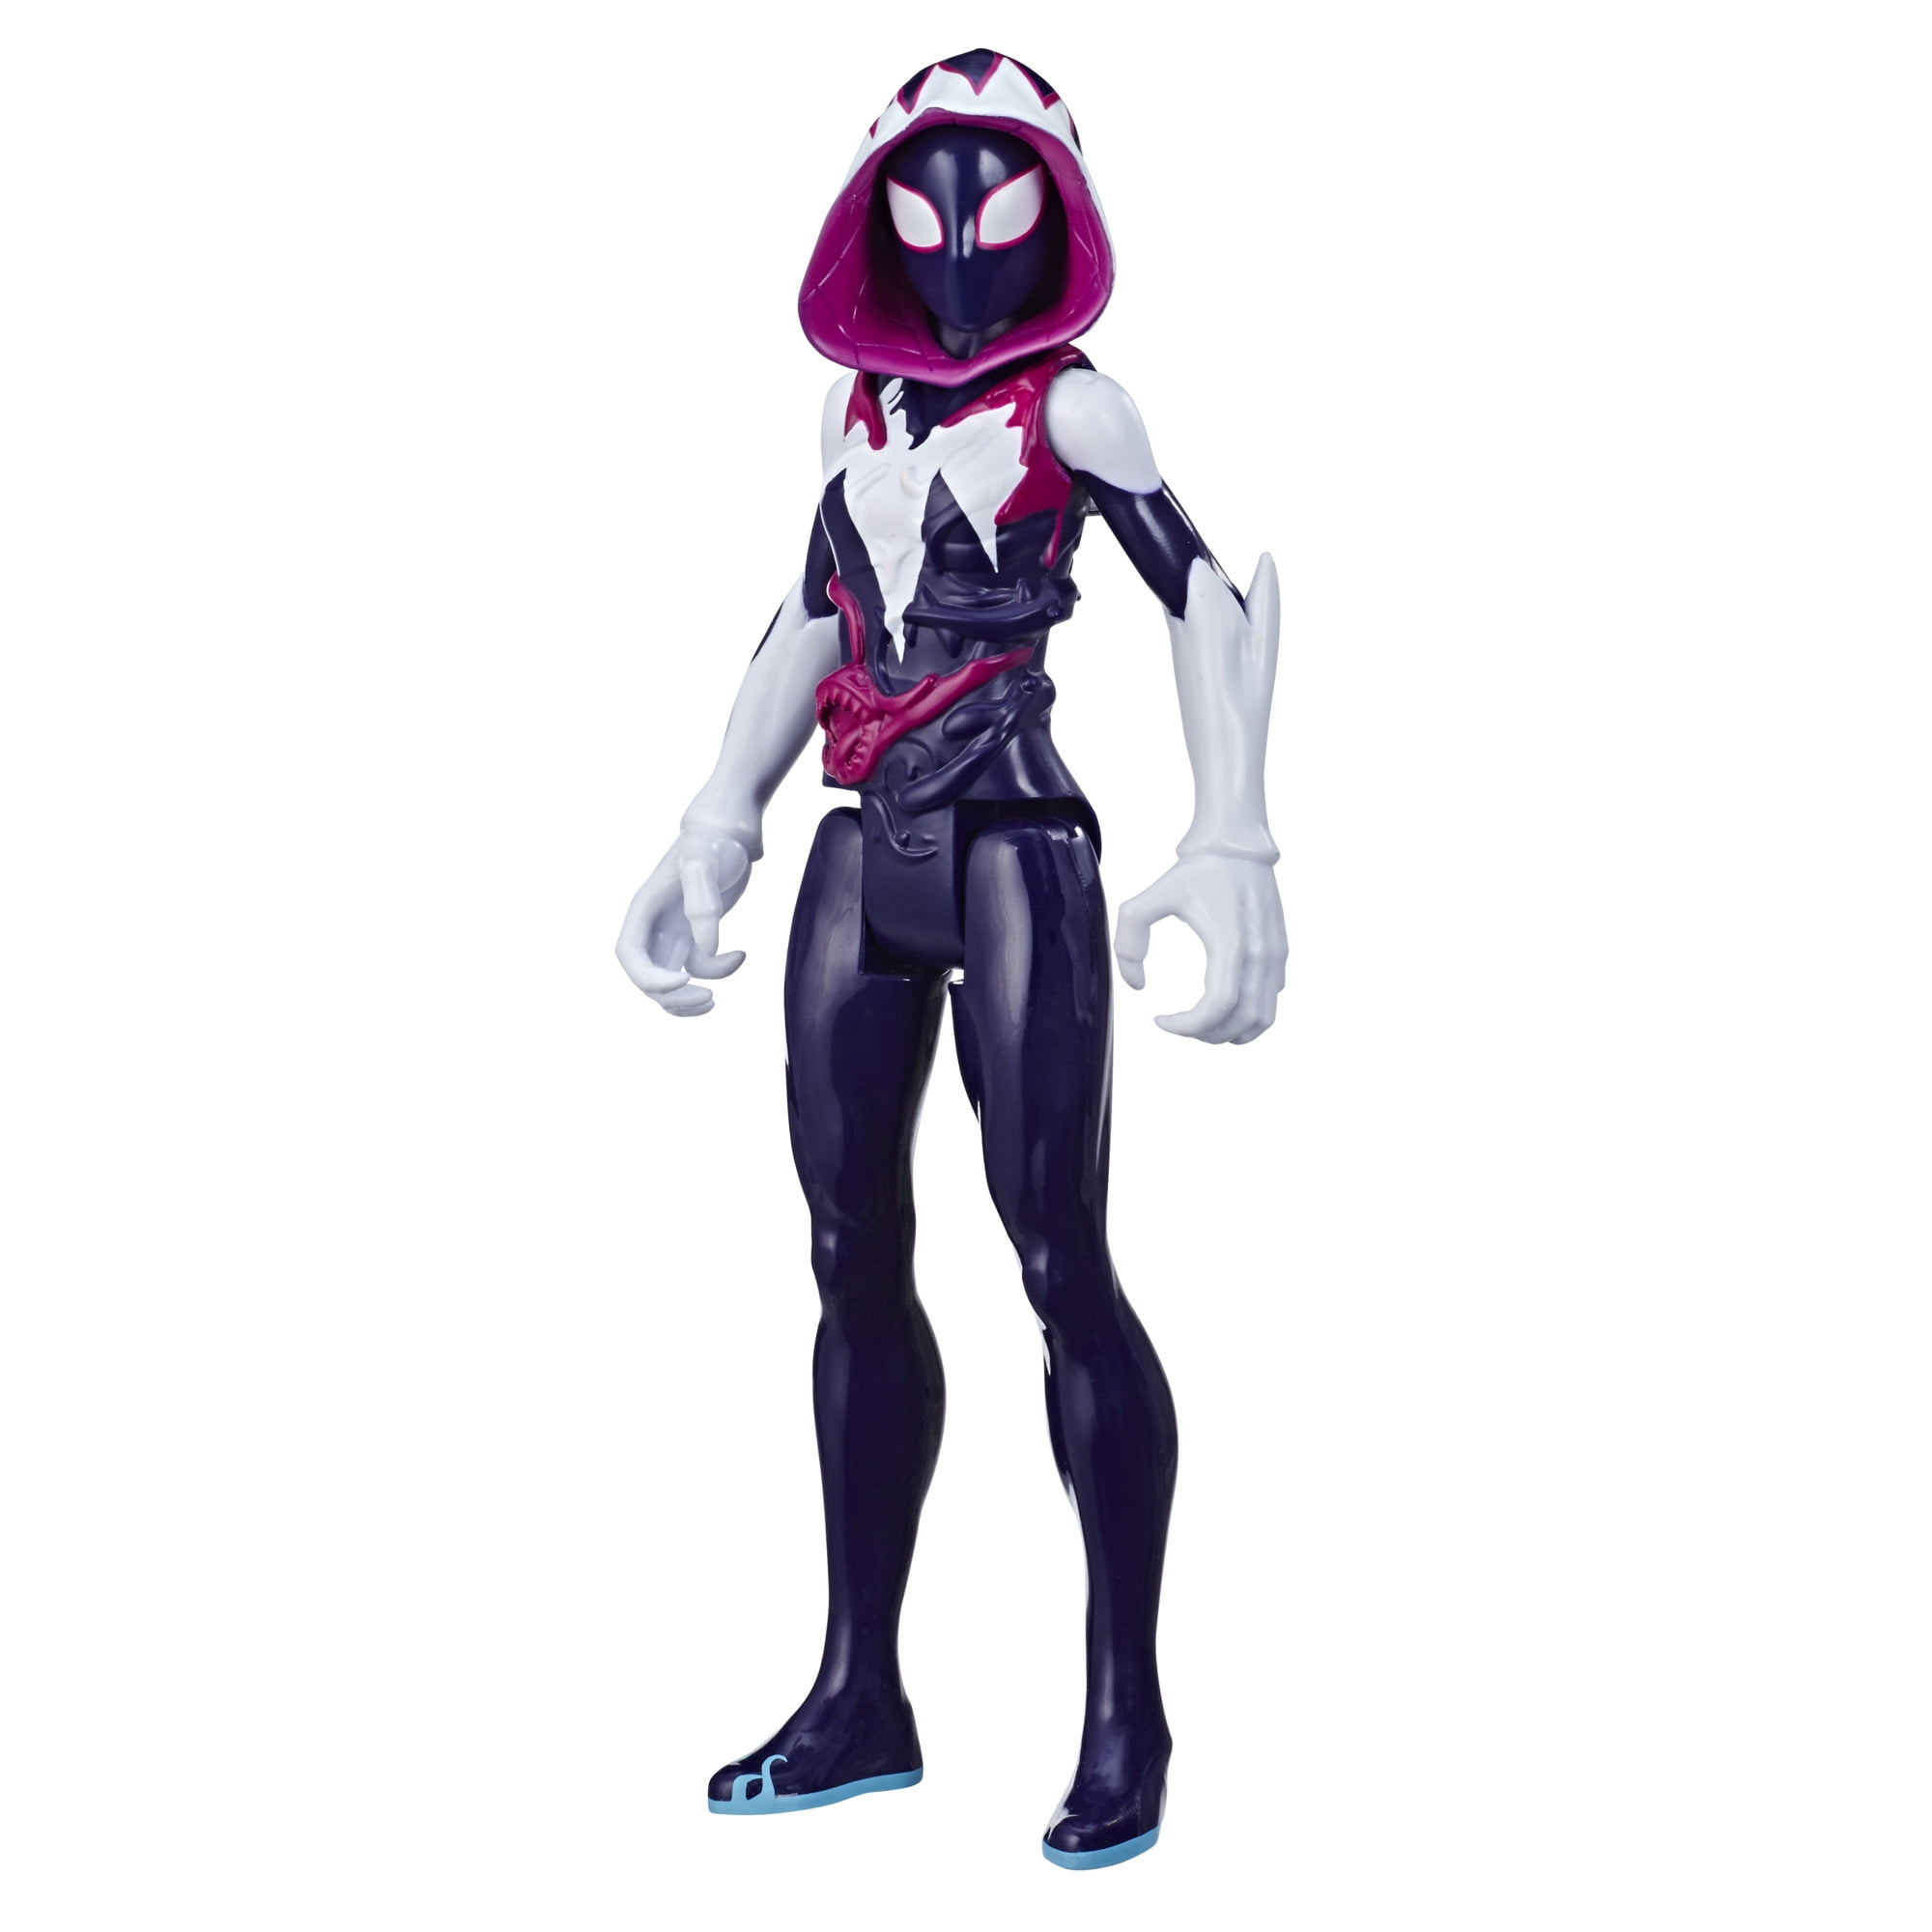 Spider-Man Maximum Venom Titan Hero Ghost-Spider Action Figure, Ages 4 and  up 